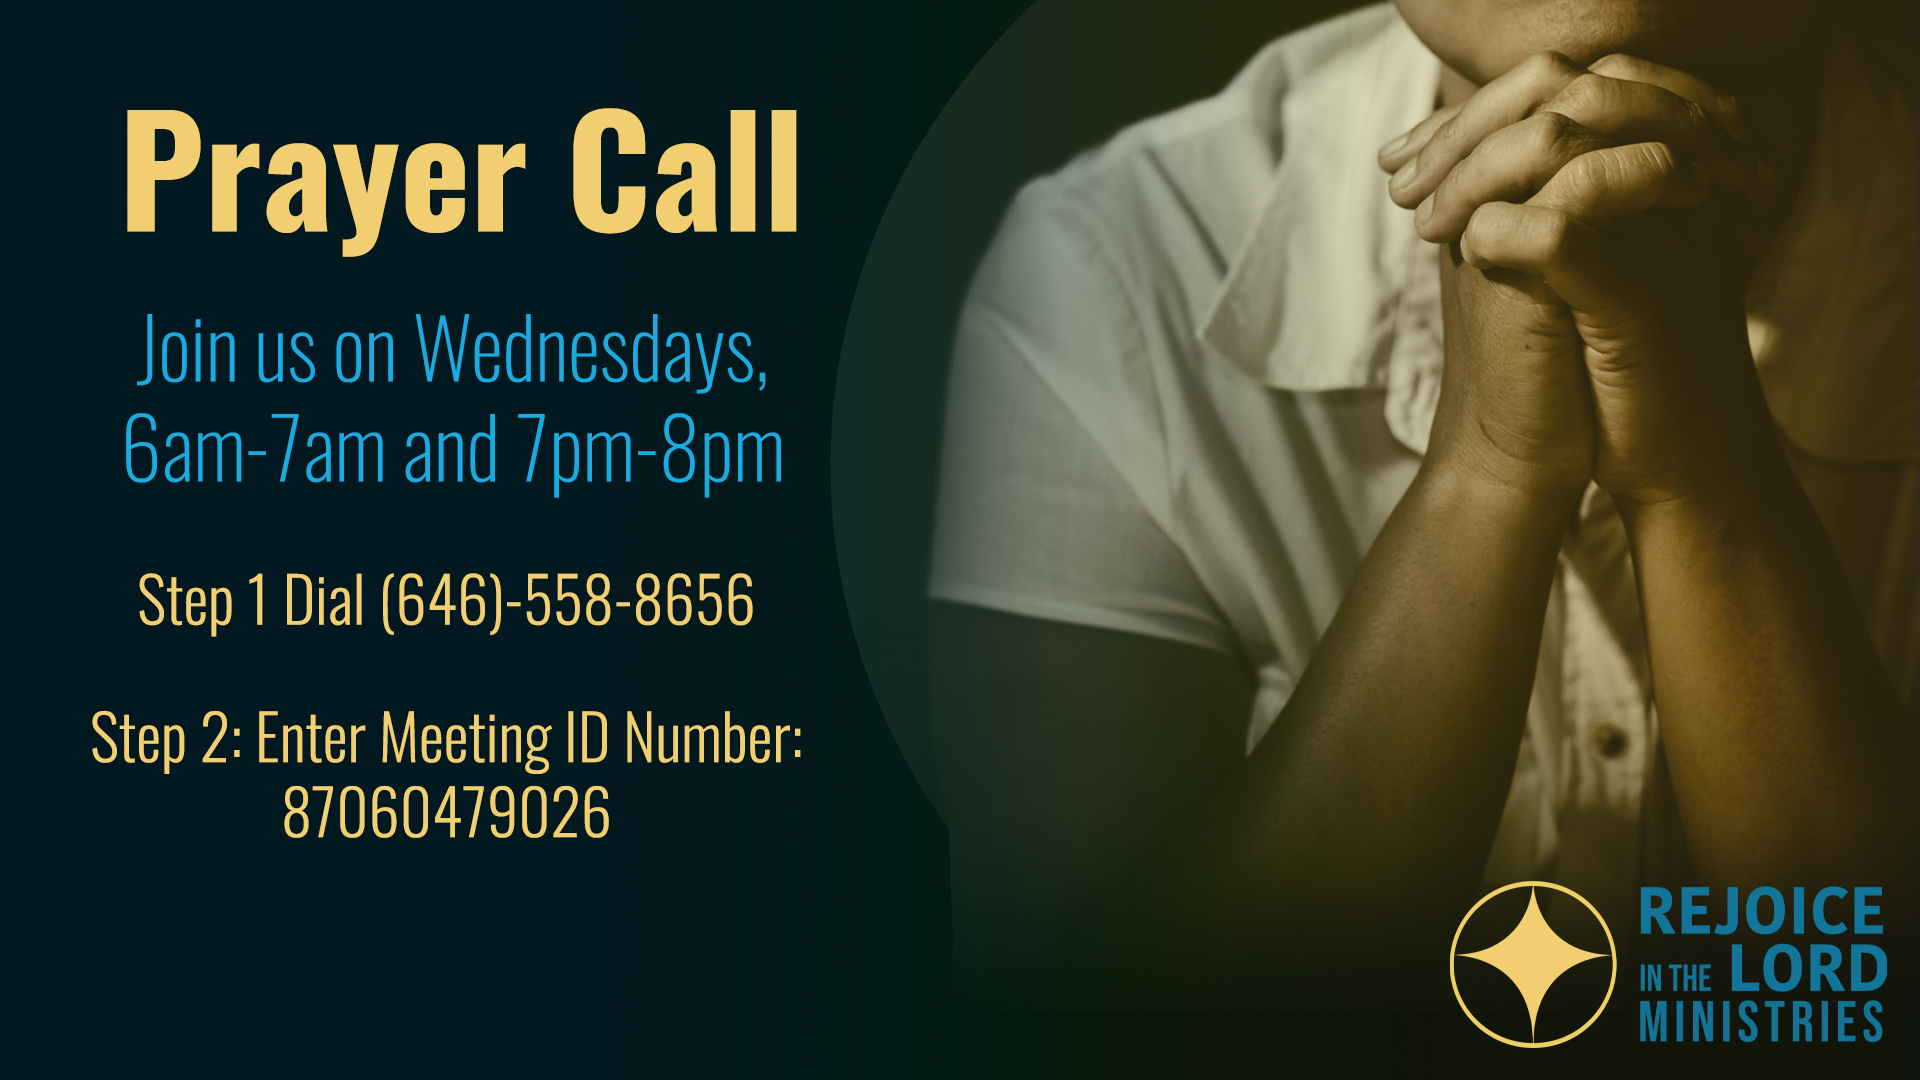 prayer call graphic - 2-2022 - website banner revized